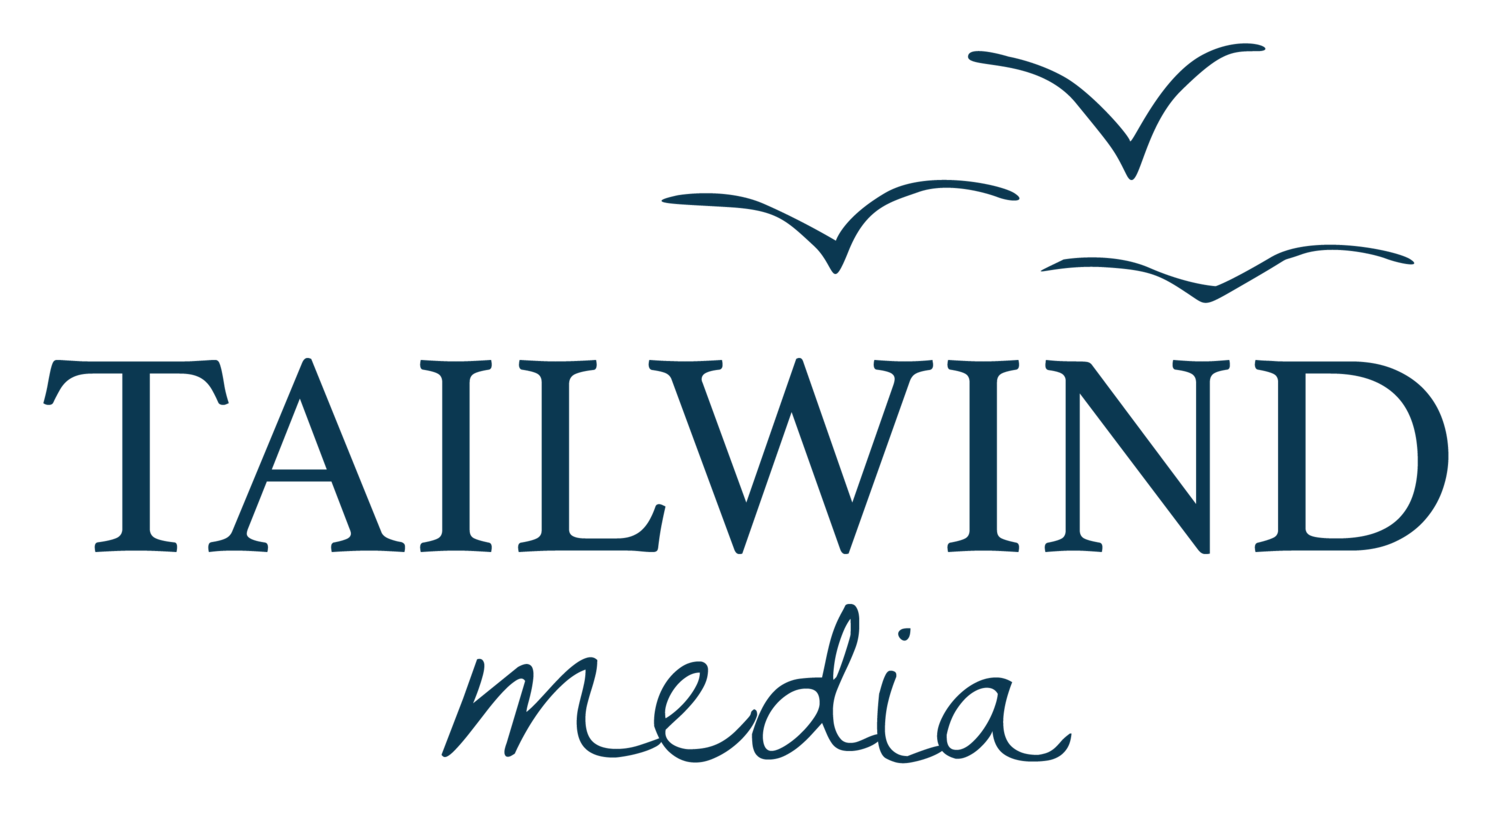 Tailwind Media